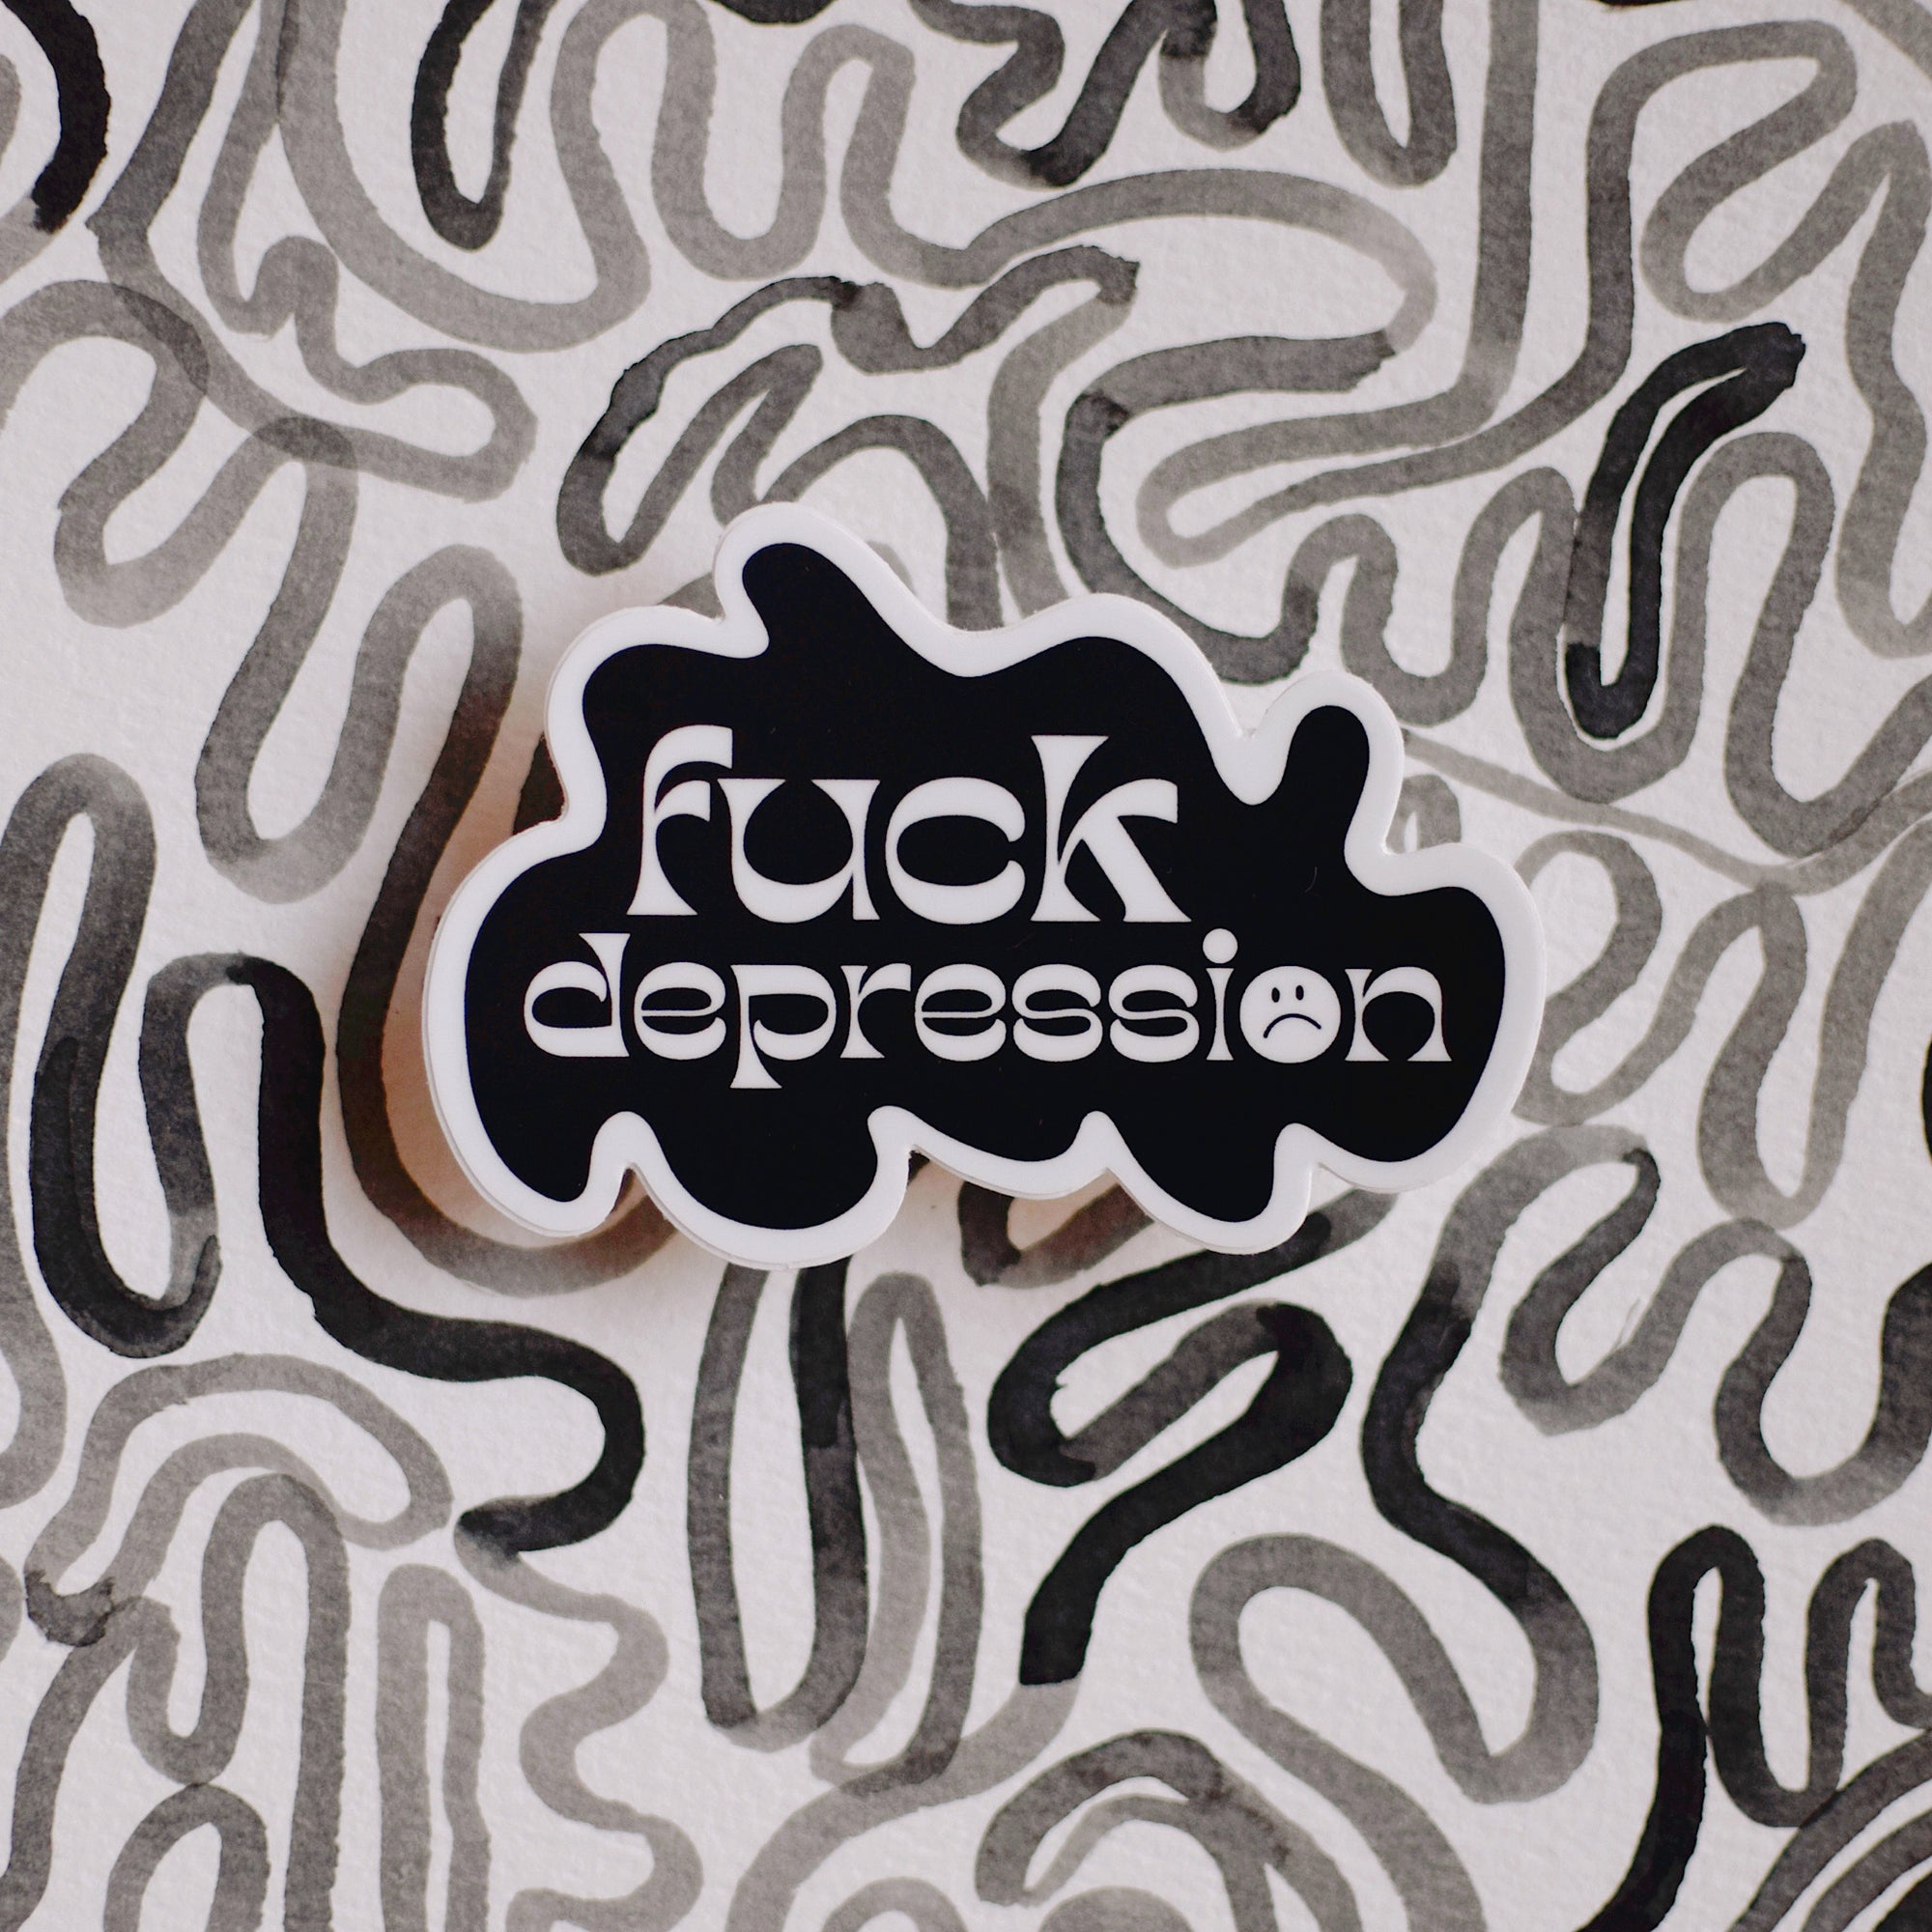 Sticker - fuck depression :(